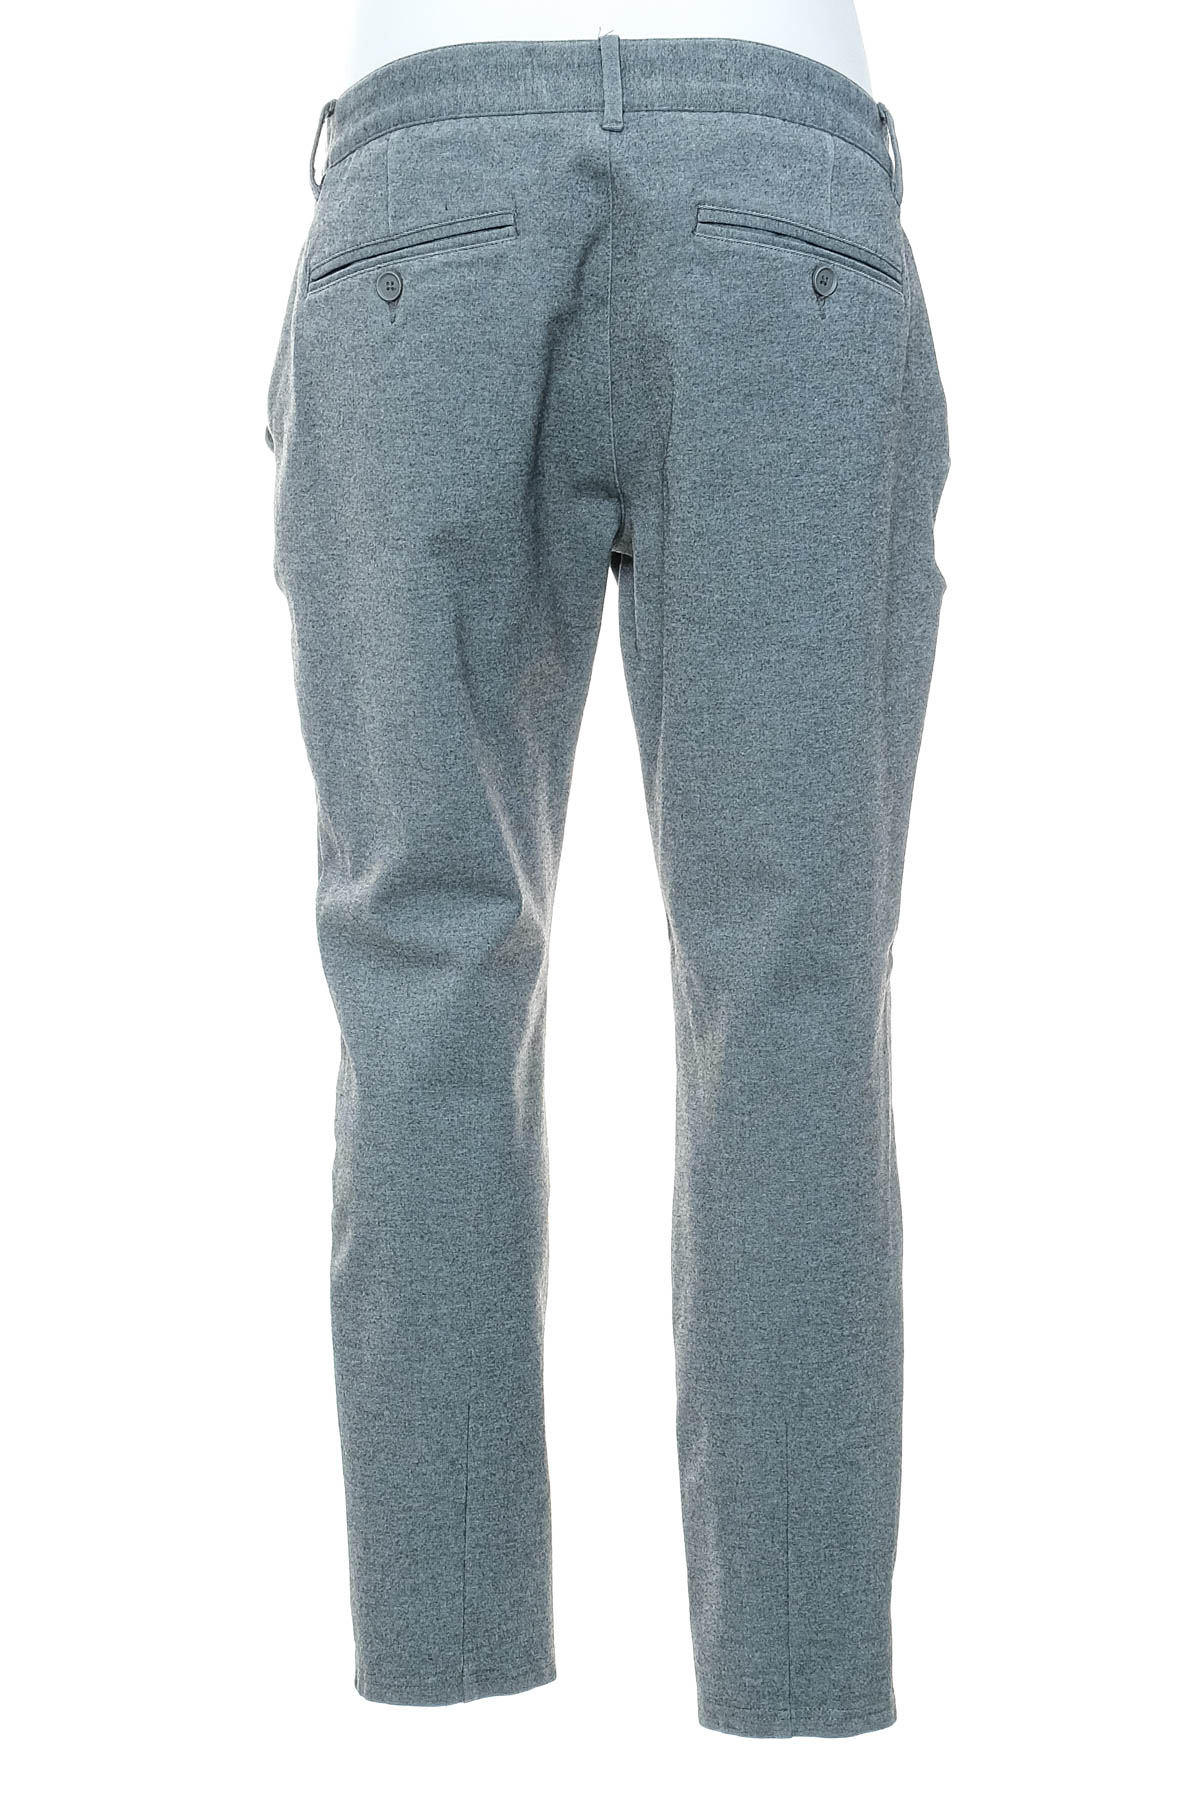 Pantalon pentru bărbați - ONLY & SONS - 1